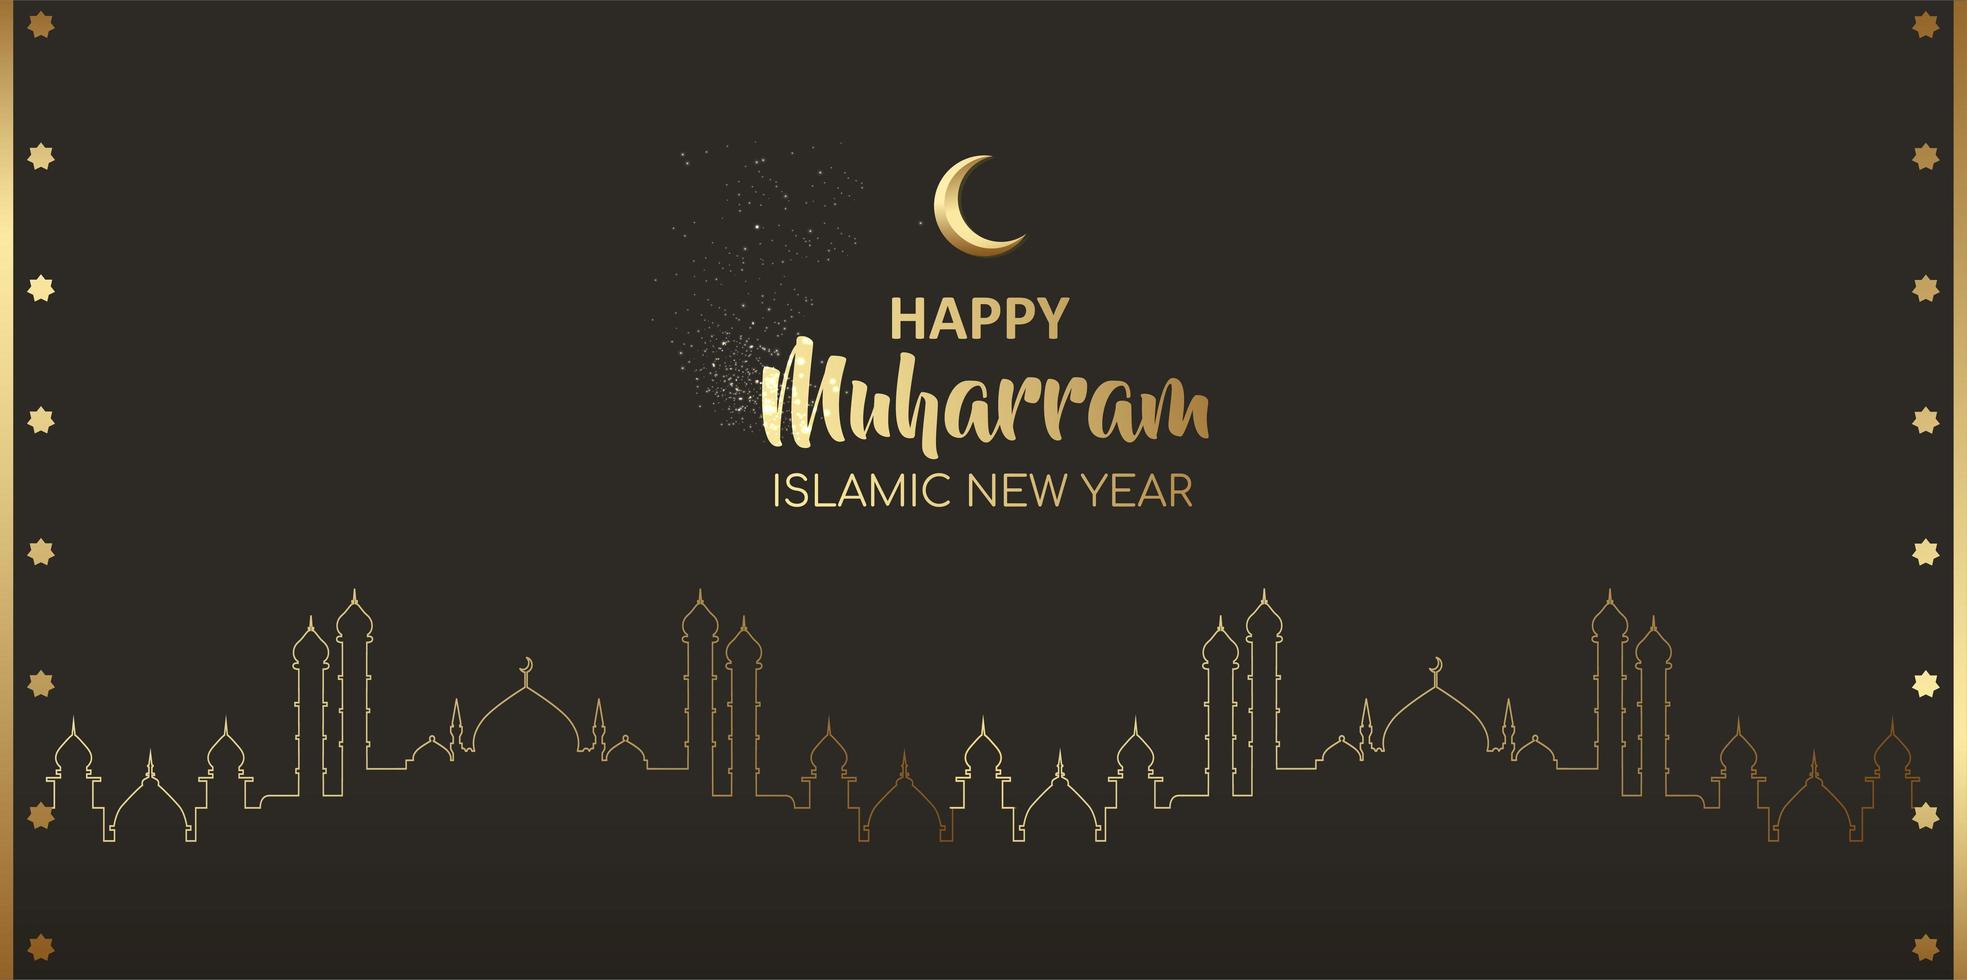 felice muharram islamico anno nuovo card design notturno vettore